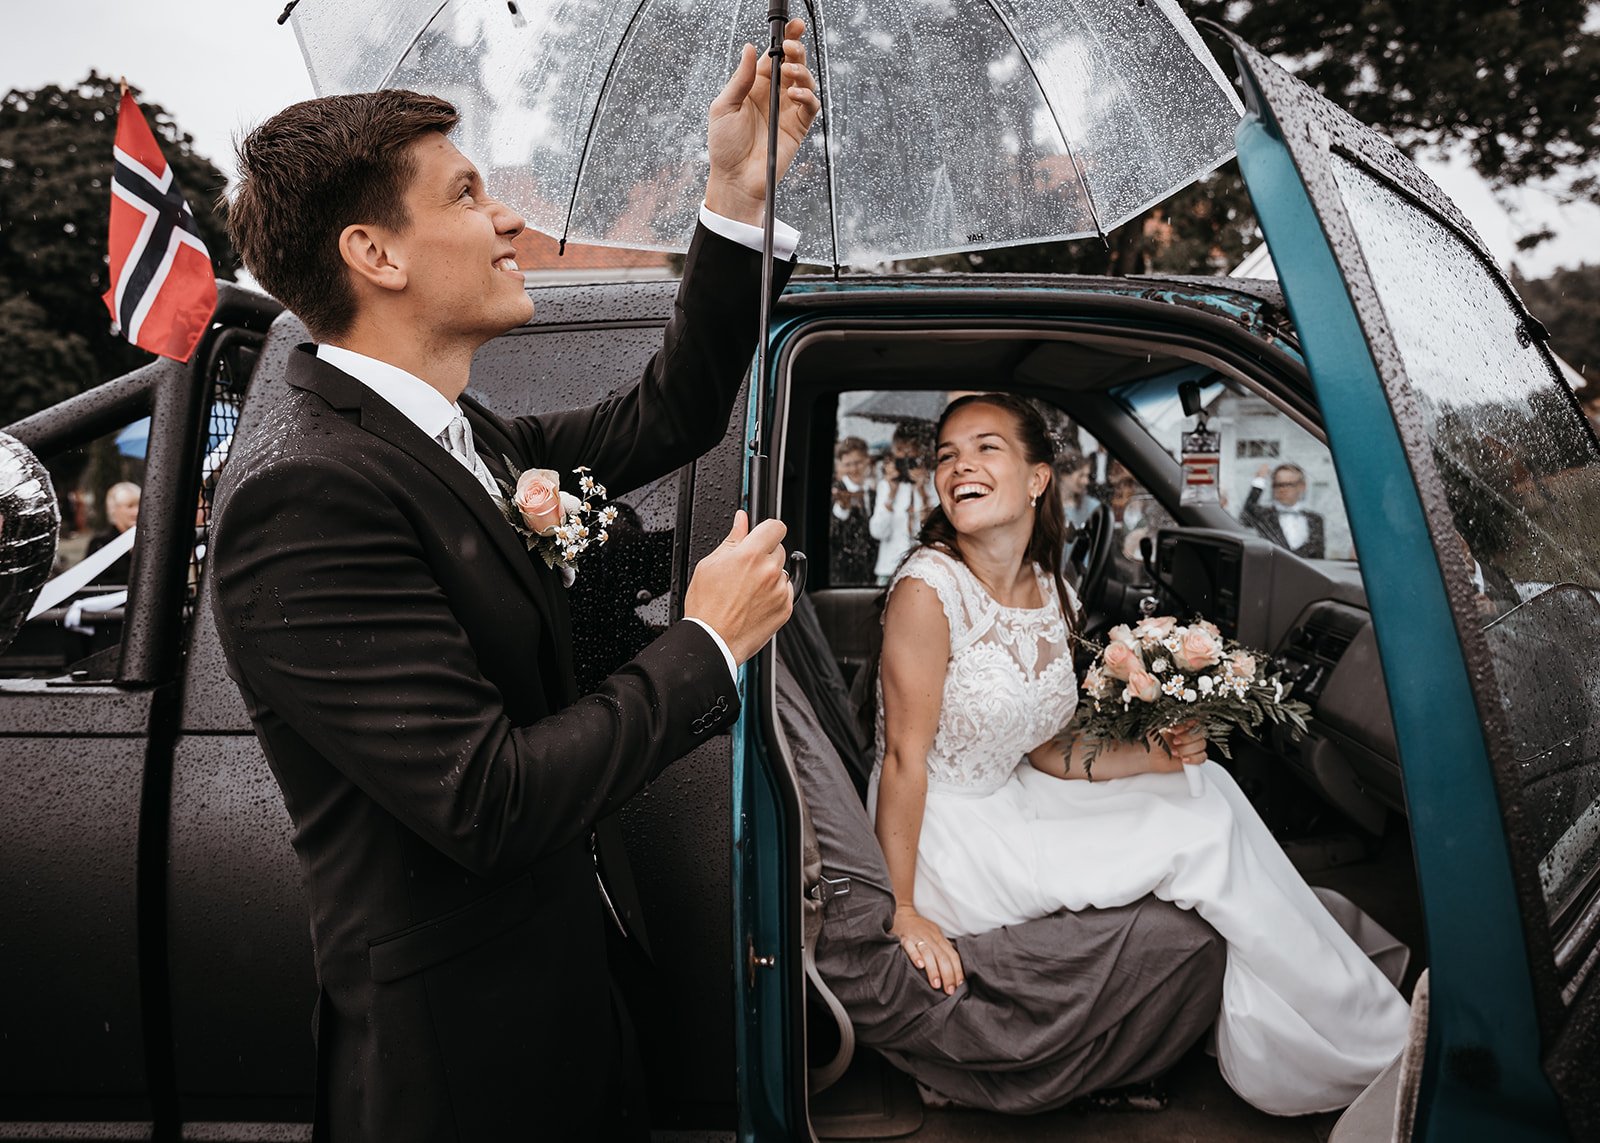 Gjennomsiktig paraply er godt å ha på en grå bryllupsdag